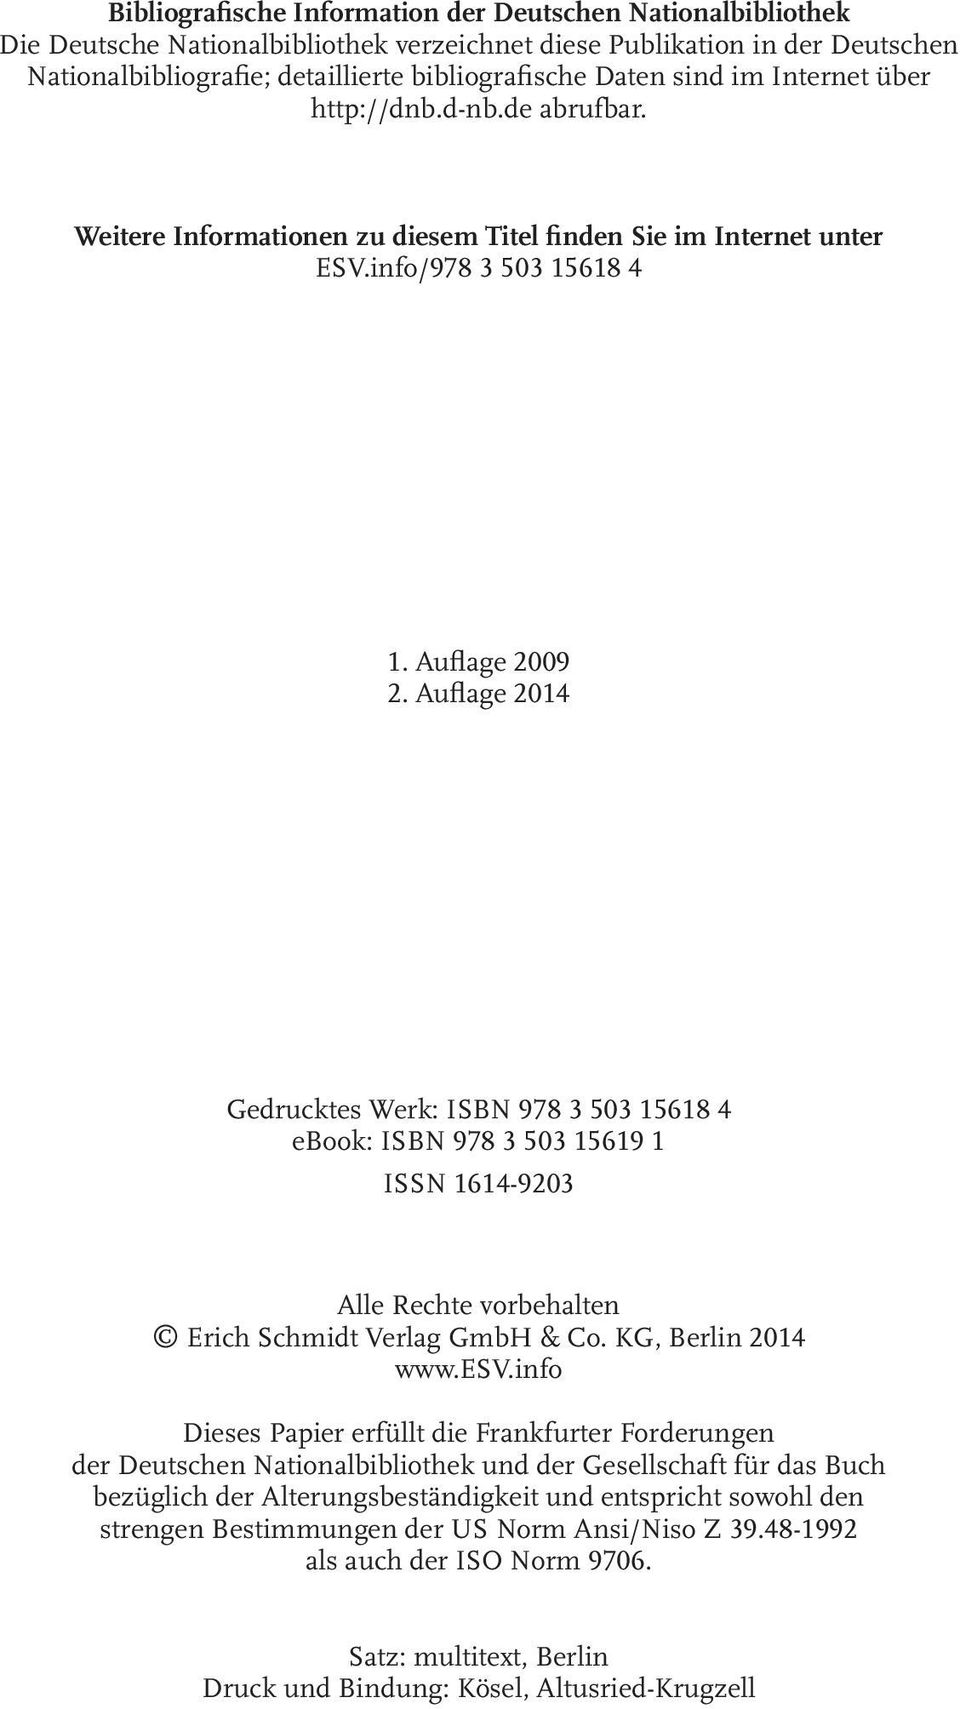 Auflage 2014 Gedrucktes Werk: ISBN 978 3 503 15618 4 ebook: ISBN 978 3 503 15619 1 ISSN 1614-9203 Alle Rechte vorbehalten Erich Schmidt Verlag GmbH & Co. KG, Berlin 2014 www.esv.